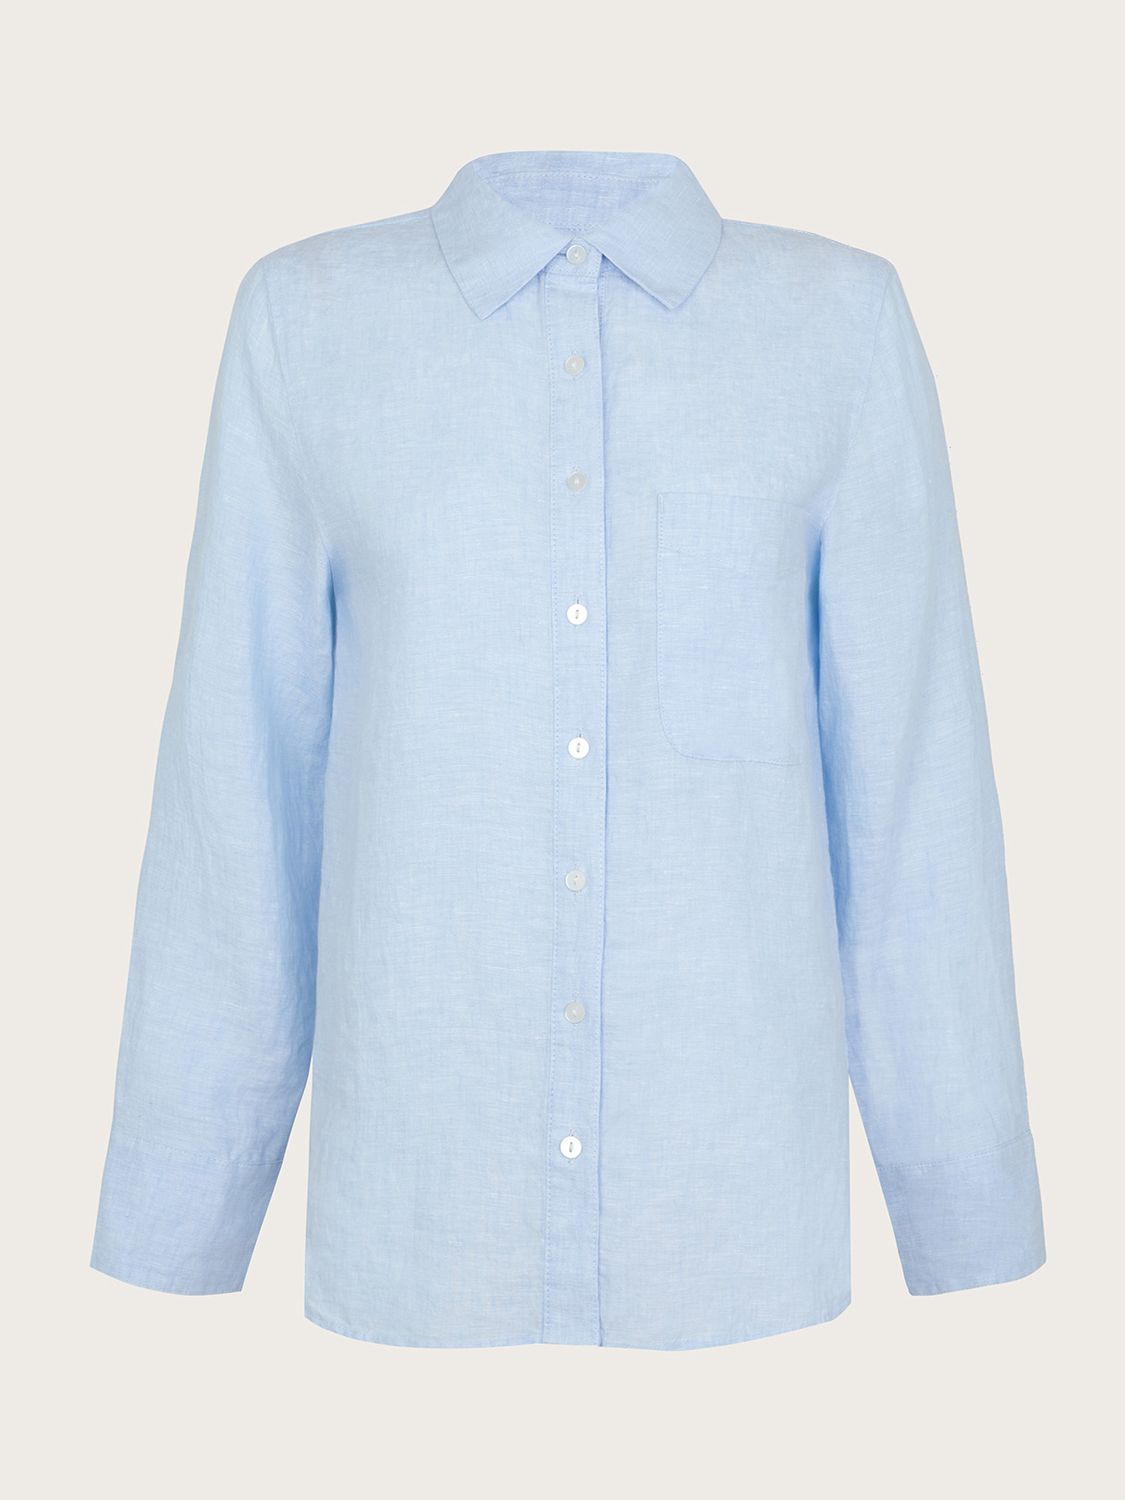 Monsoon Charlie Linen Shirt, Blue, S